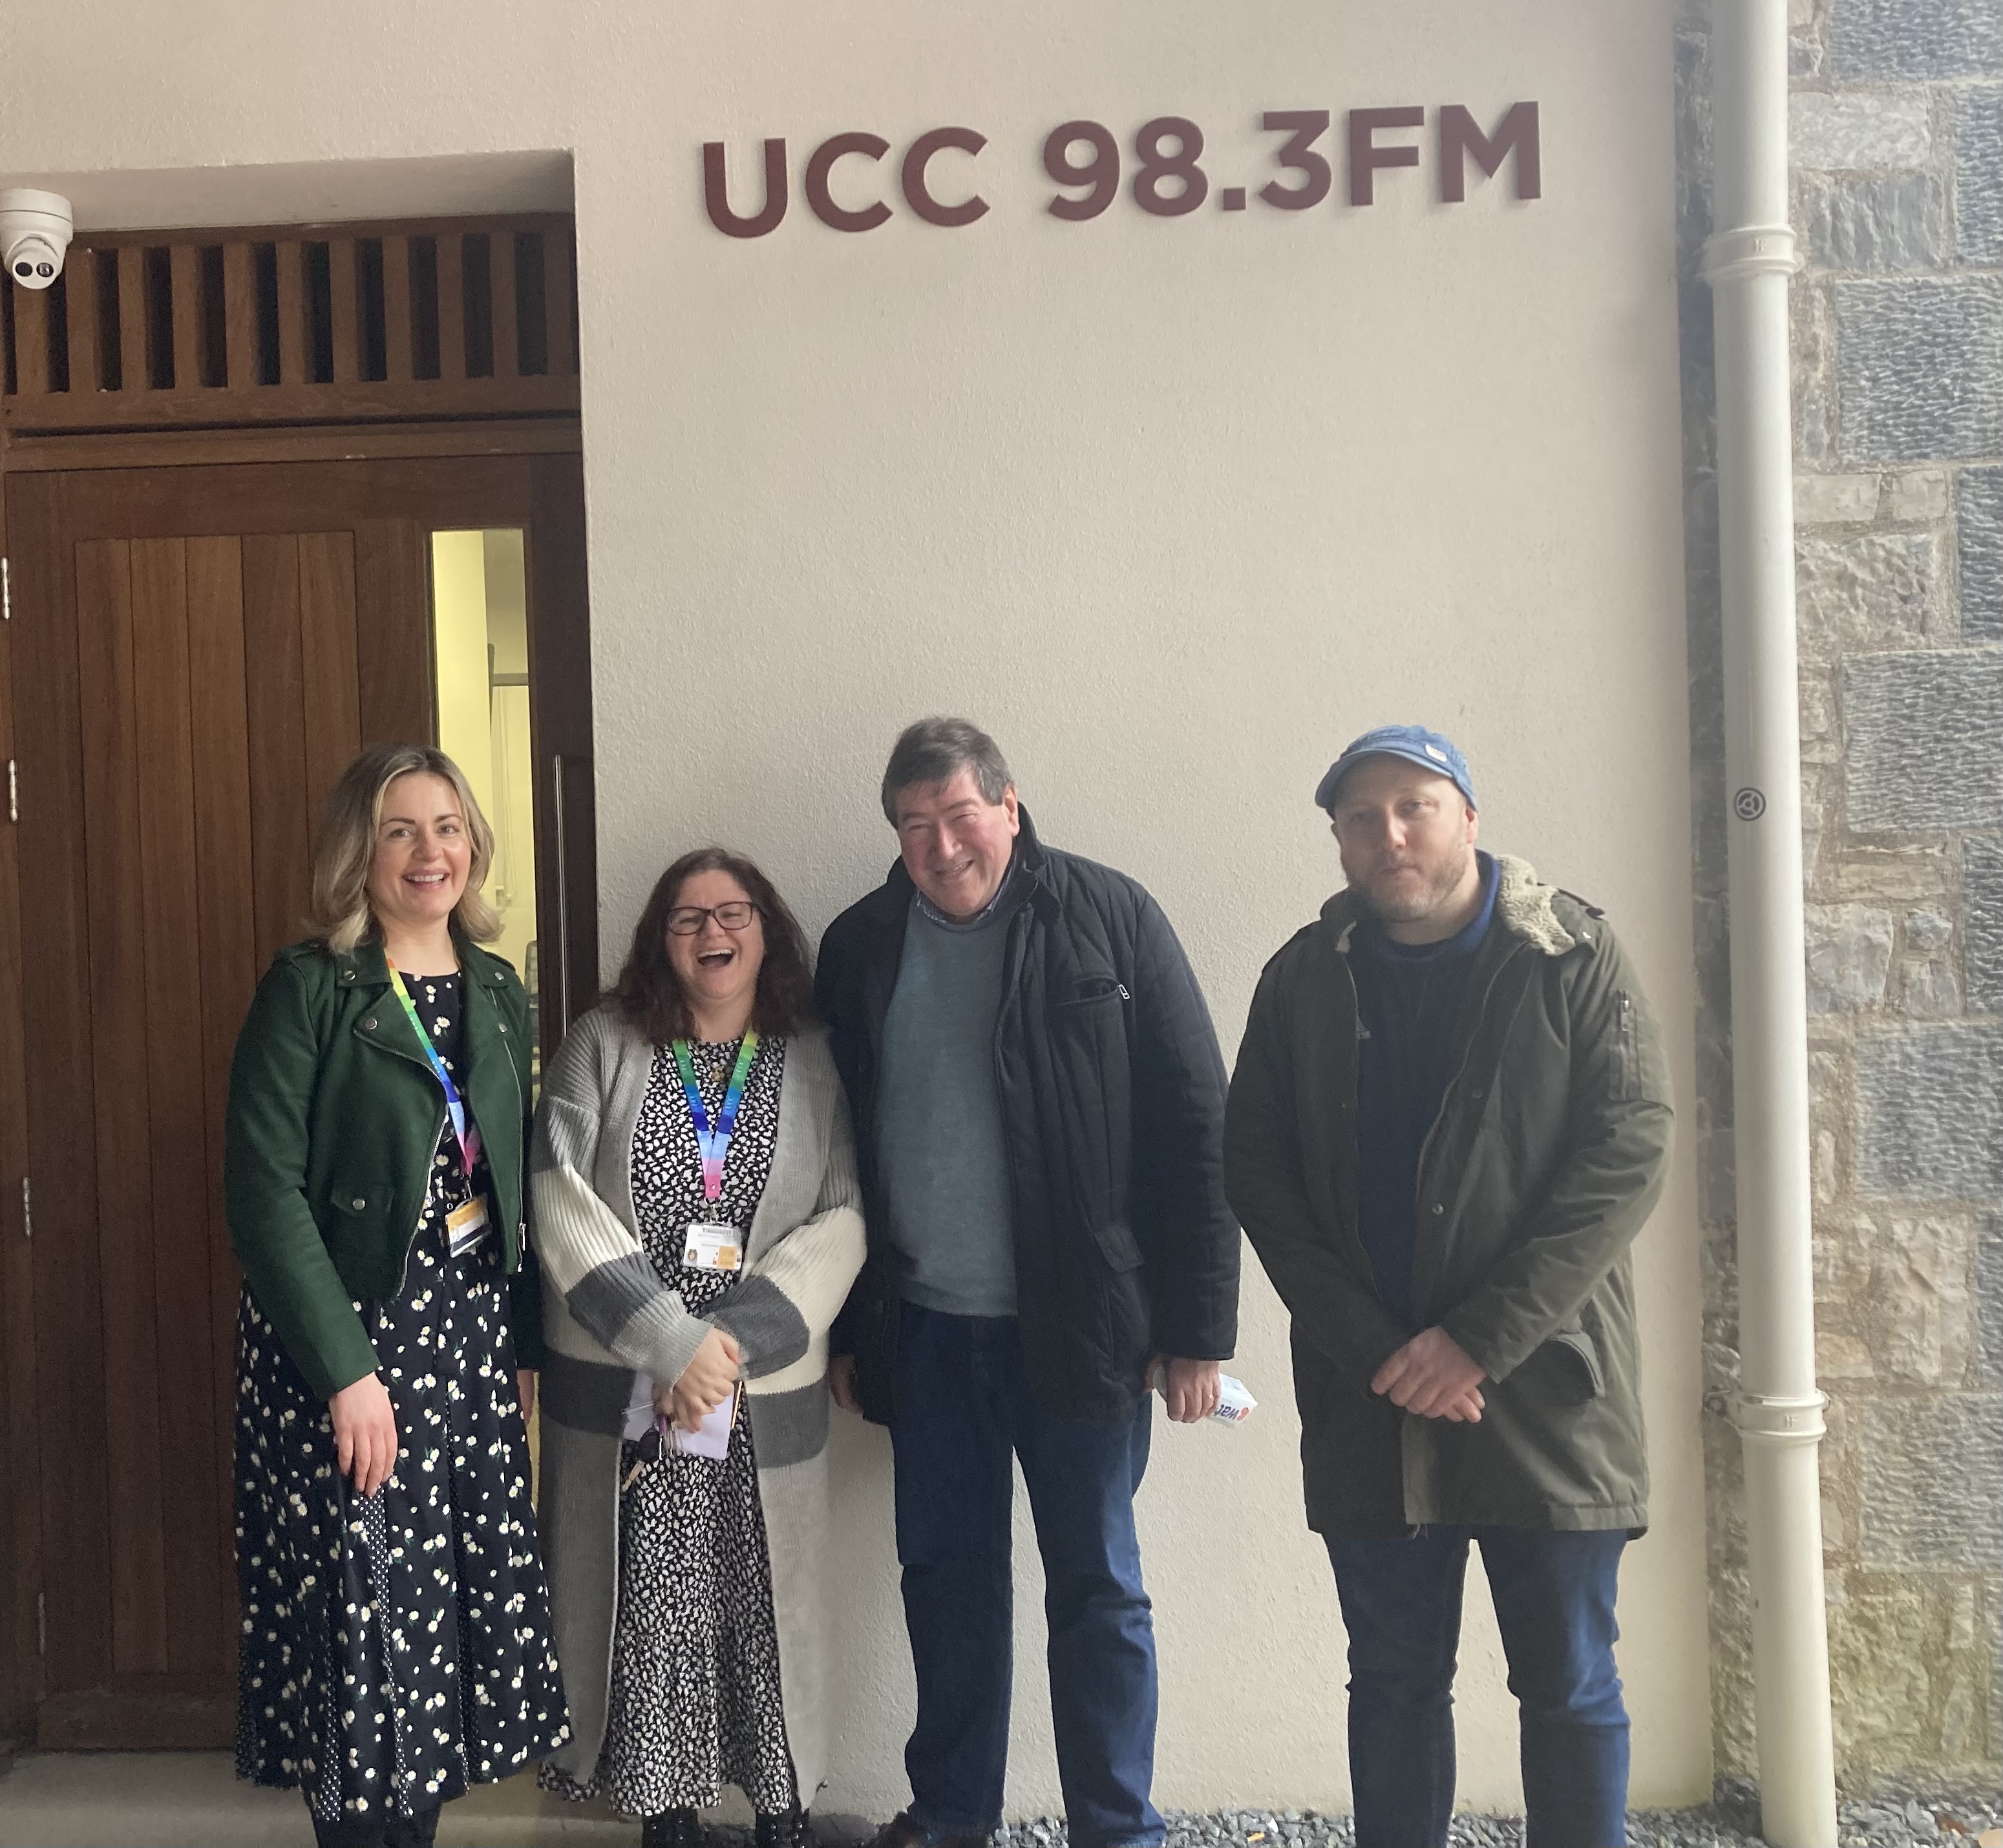 Feature image:  Pictured left-right: Deirdre Keane, Noelette Hurley, Peter Flynn and Eoin O’Sullivan outside UCC.98.3FM